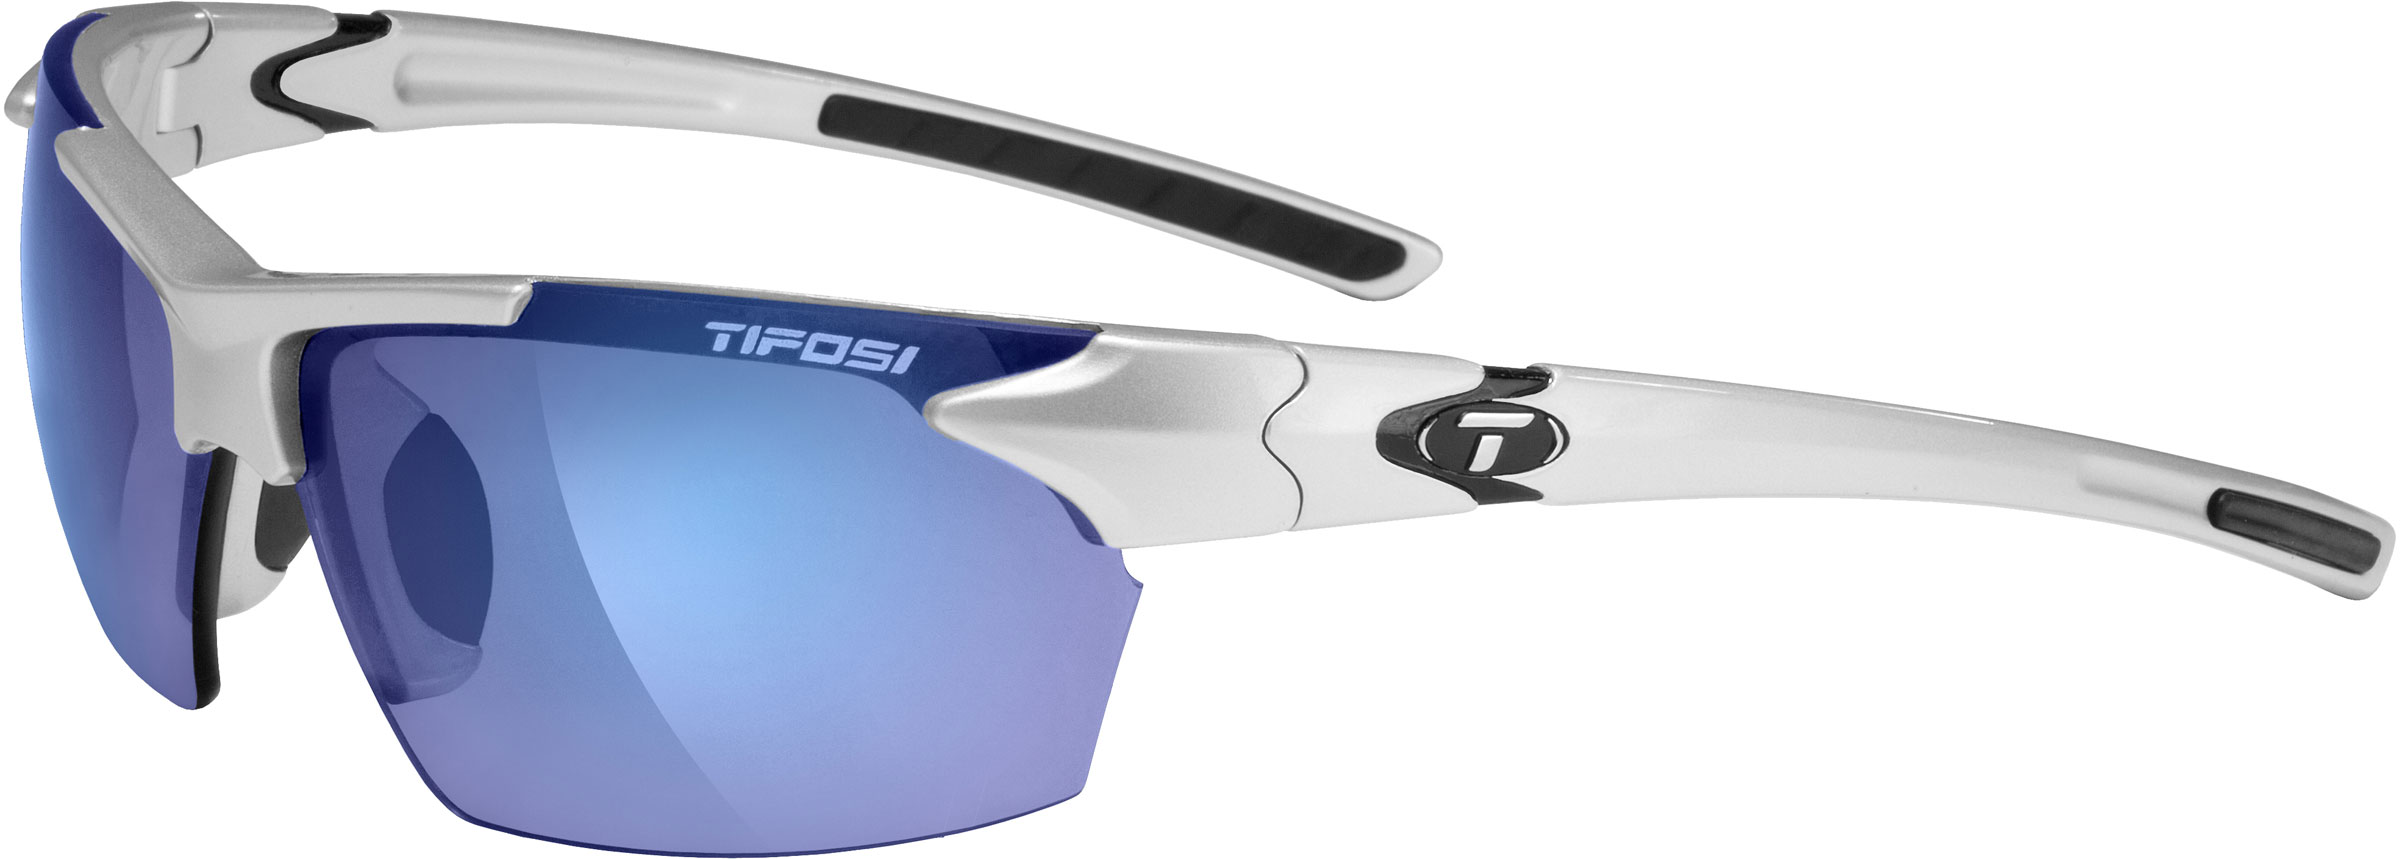 Smoke Red Lenses Tifosi Jet Sunglasses Golf/Sports Eyewear Matte White Frame 